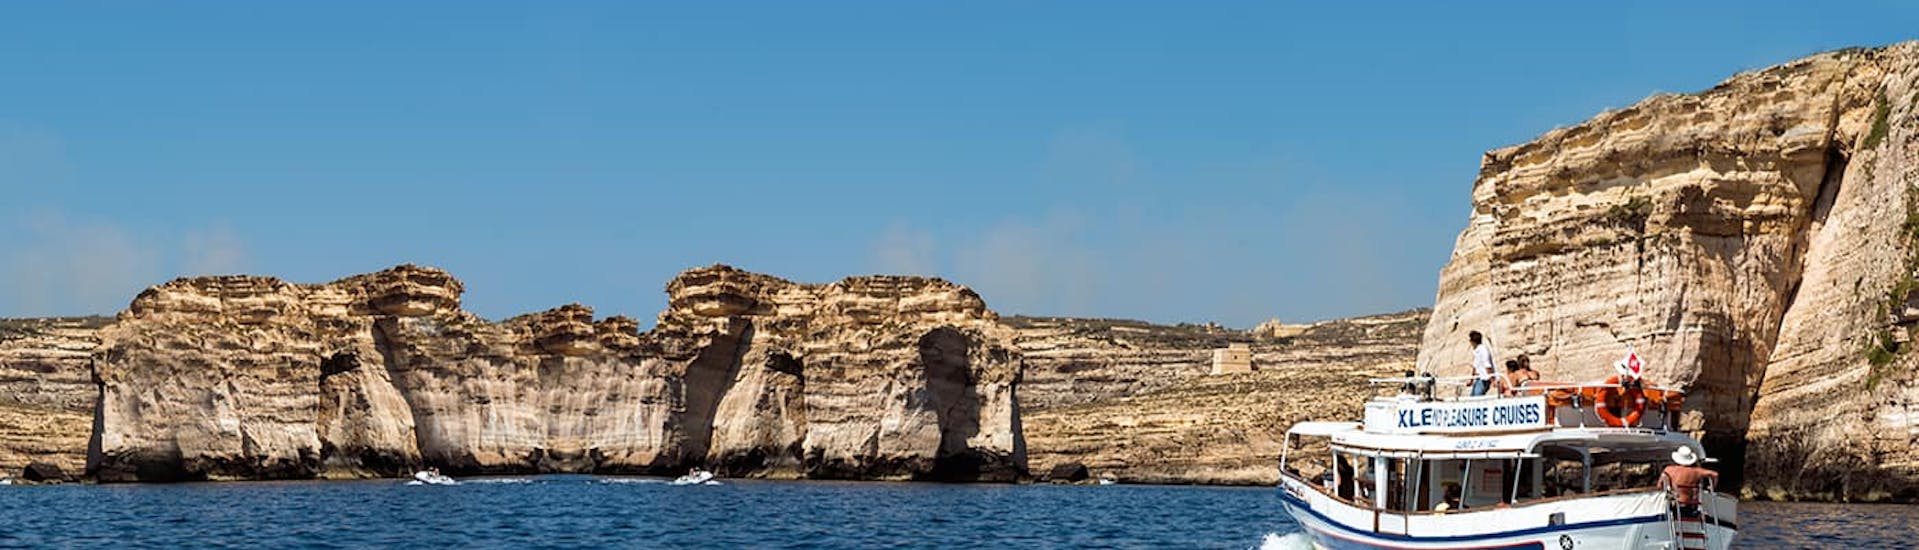 Paseo en barco privado de Malta a Comino  & baño en el mar.